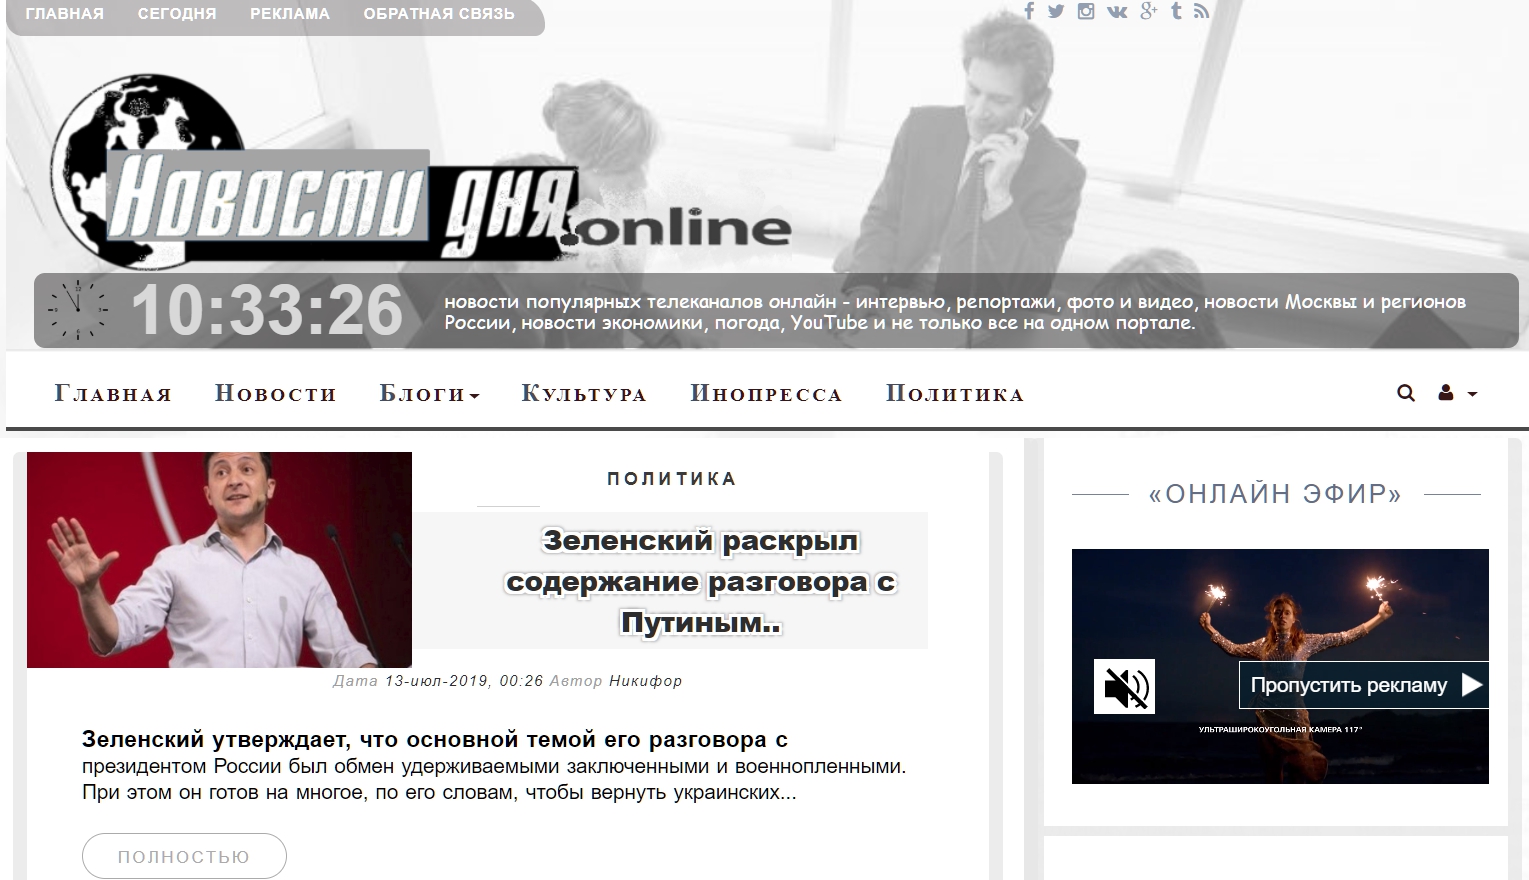 Novosti-dny.online - ������� ��� ������